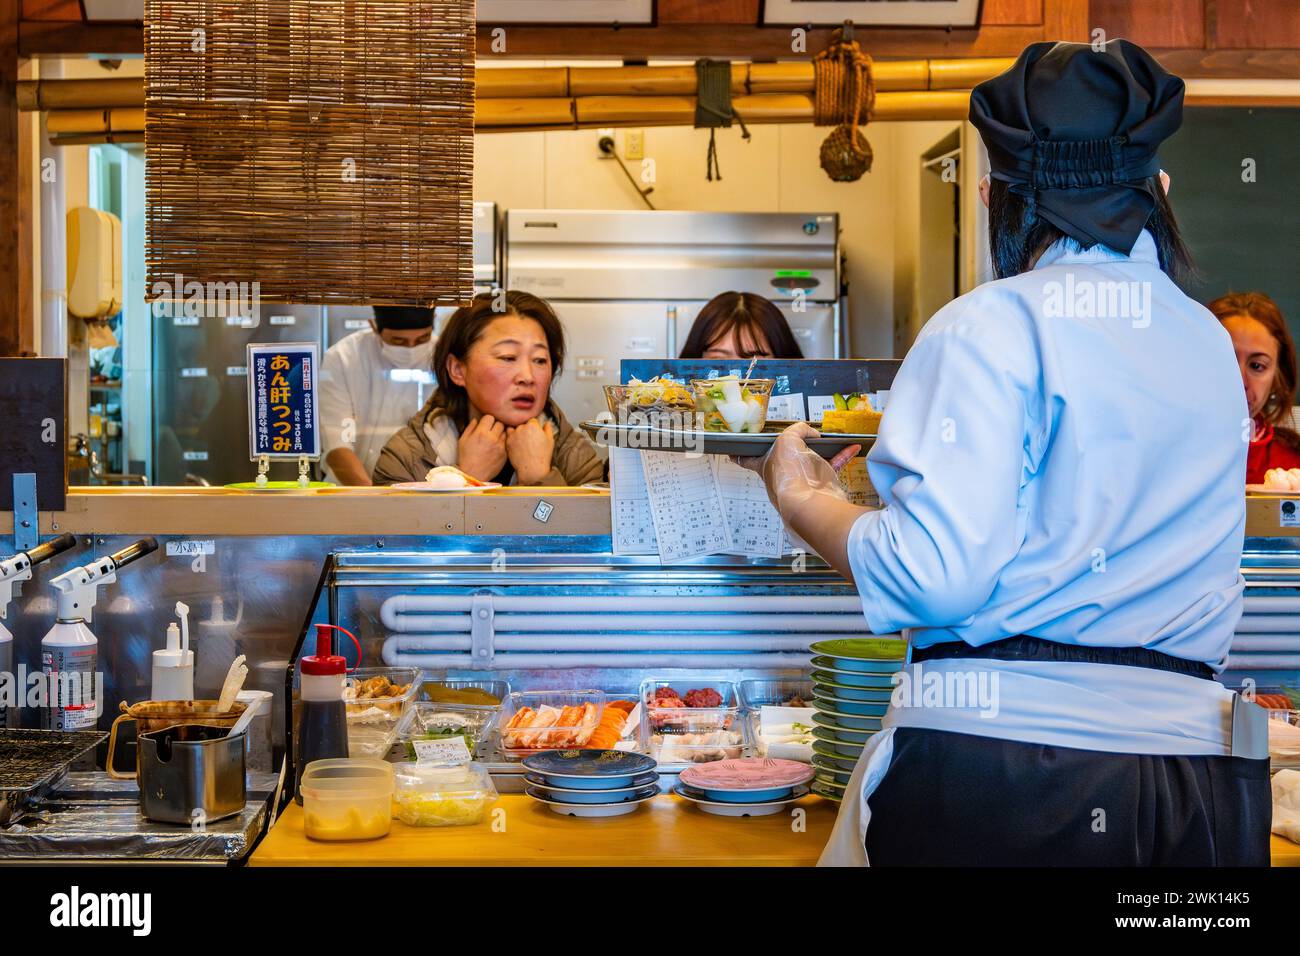 Chef cuisinant derrière le comptoir dans un restaurant Kaiten-sushi qui sert de petites assiettes de nourriture sur un tapis roulant. Hokkaido, Japon. Banque D'Images